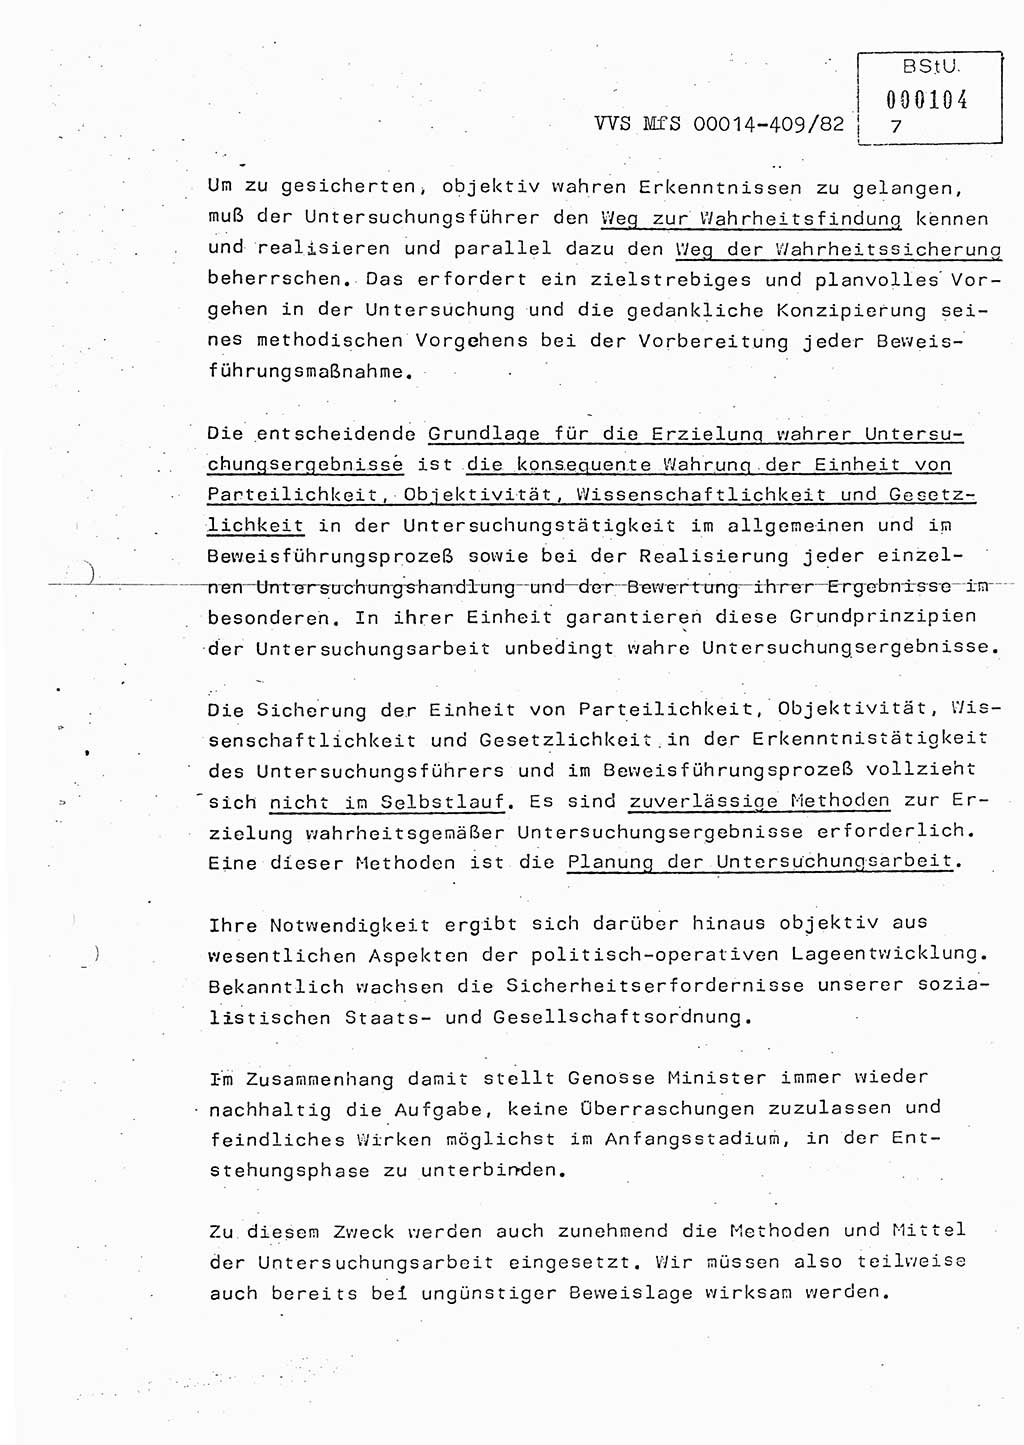 Lektion Ministerium für Staatssicherheit (MfS) [Deutsche Demokratische Republik (DDR)], Hauptabteilung (HA) Ⅸ, Vertrauliche Verschlußsache (VVS) o014-409/82, Berlin 1982, Seite 7 (Lekt. MfS DDR HA Ⅸ VVS o014-409/82 1982, S. 7)